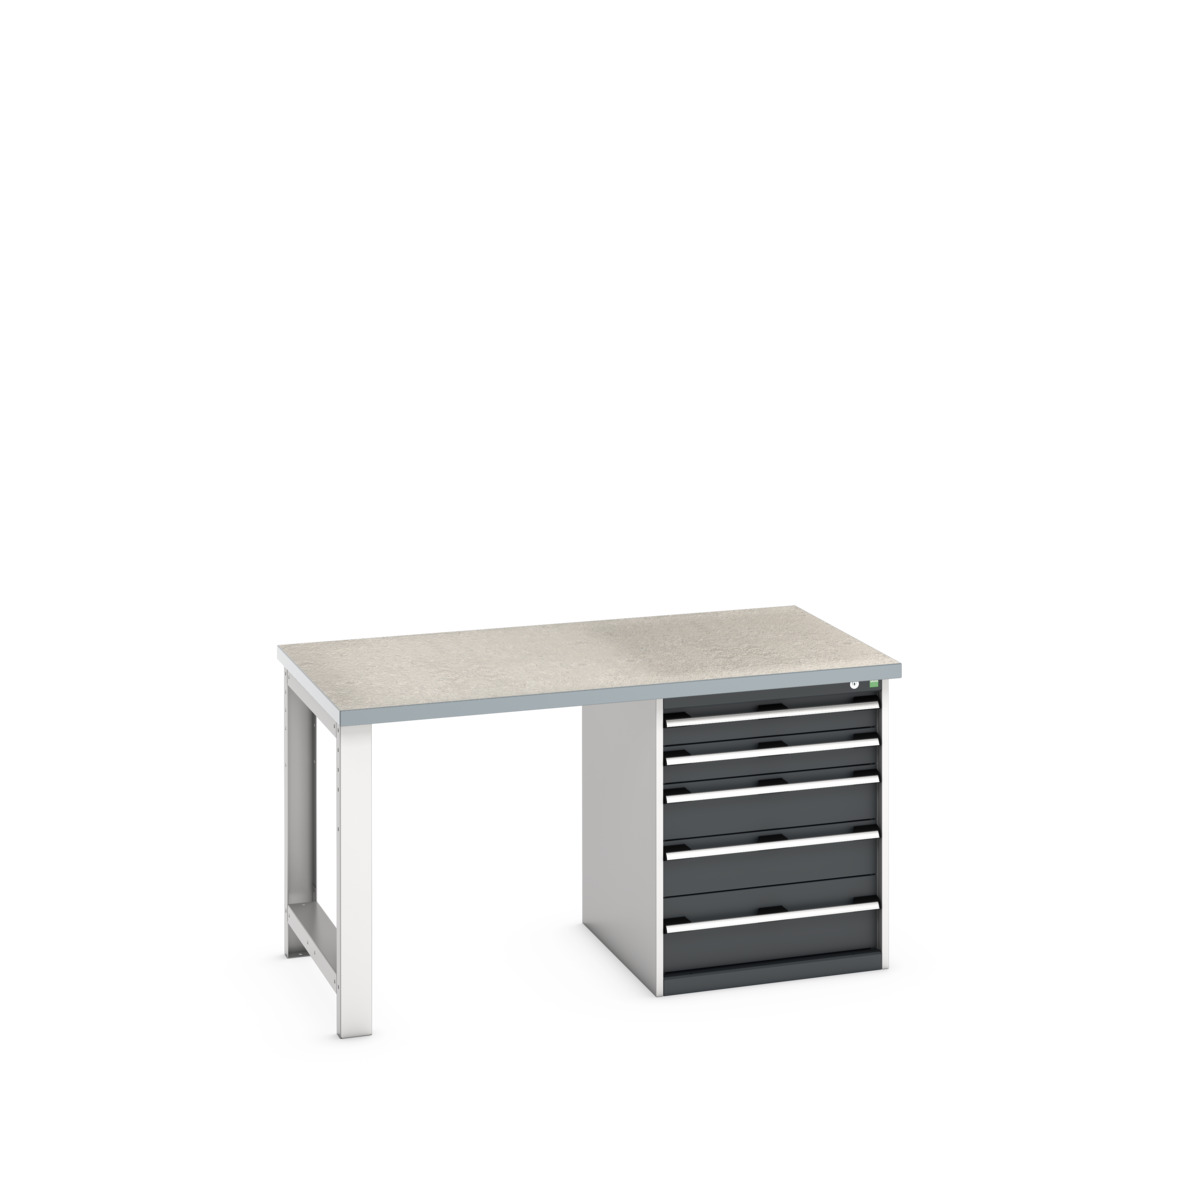 41004110.19V - cubio pedestal bench (lino)